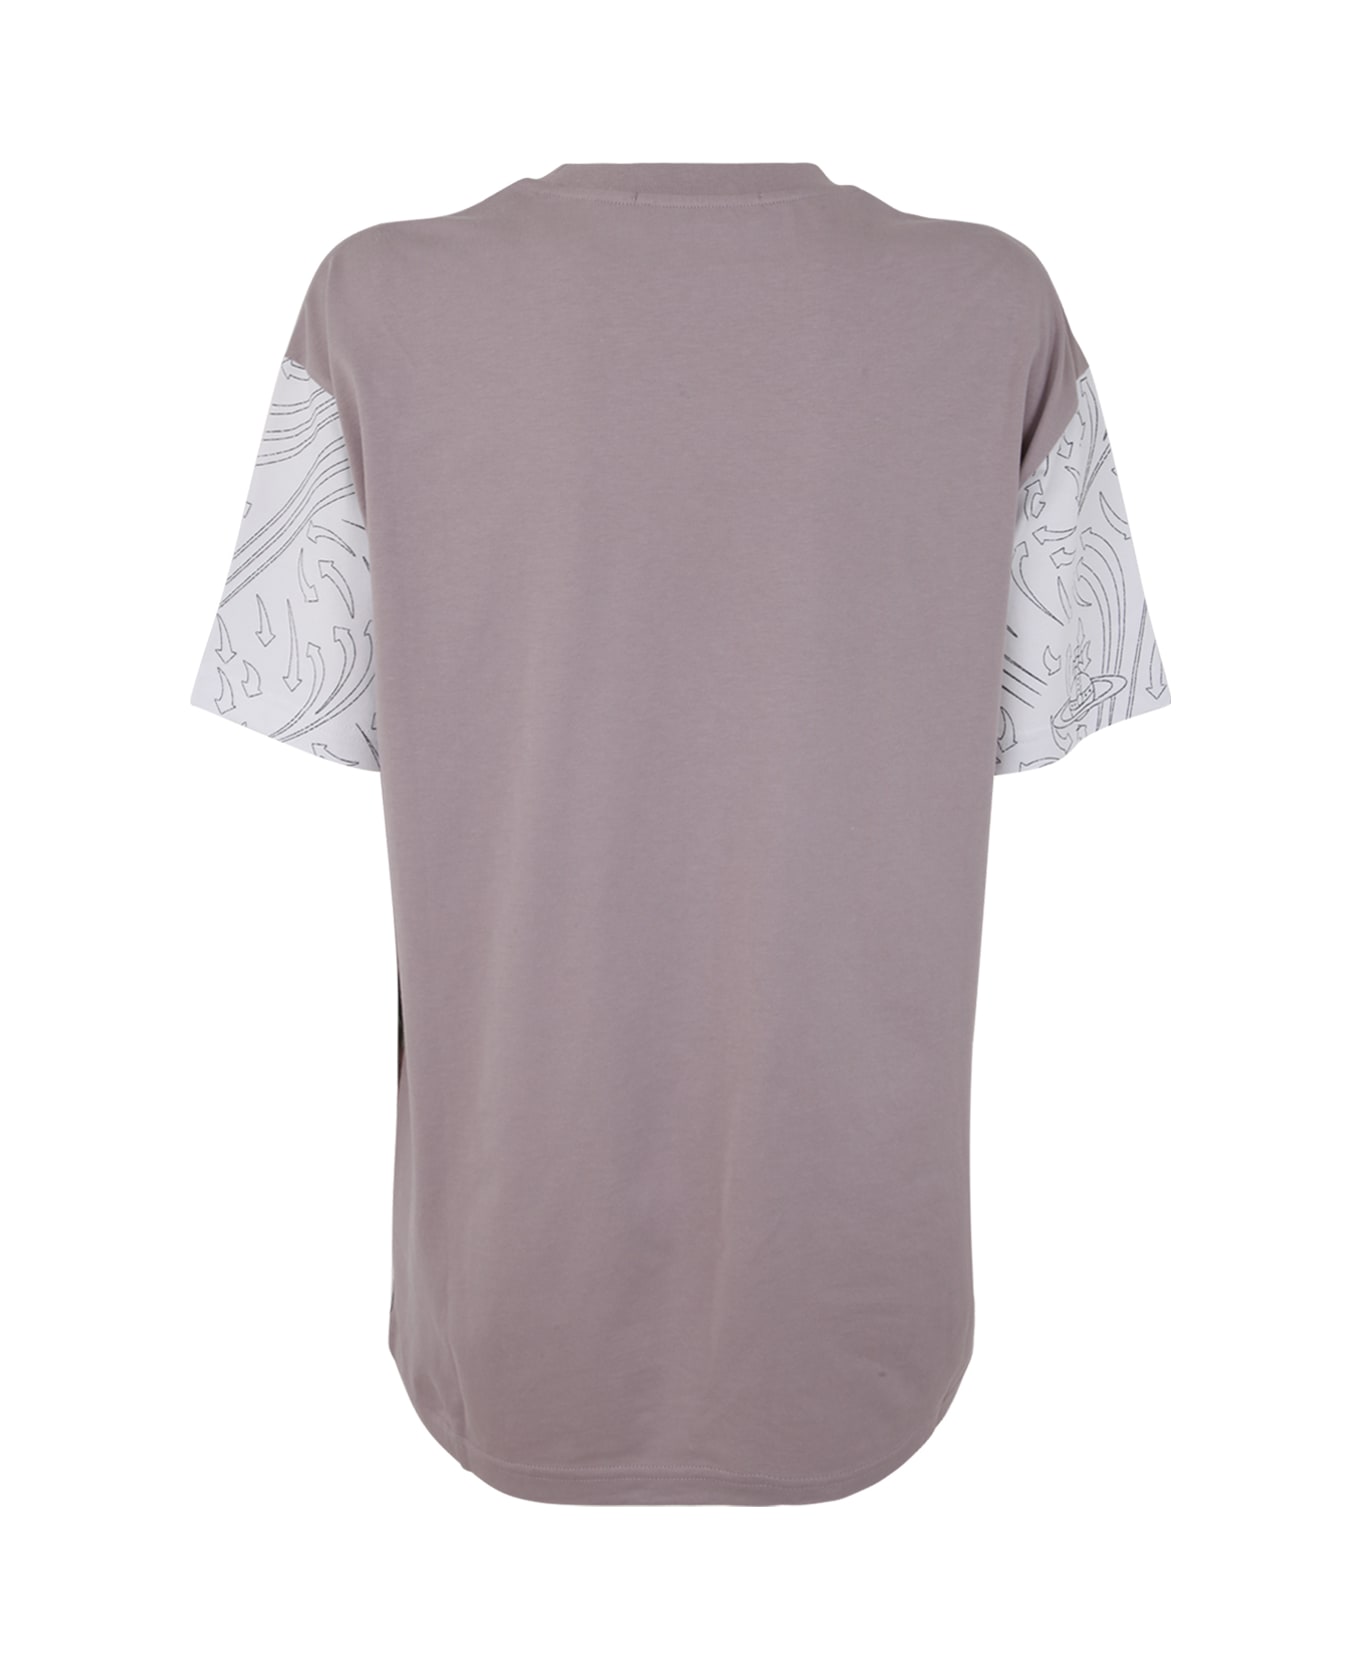 Vivienne Westwood Classic T-shirt - Boucher